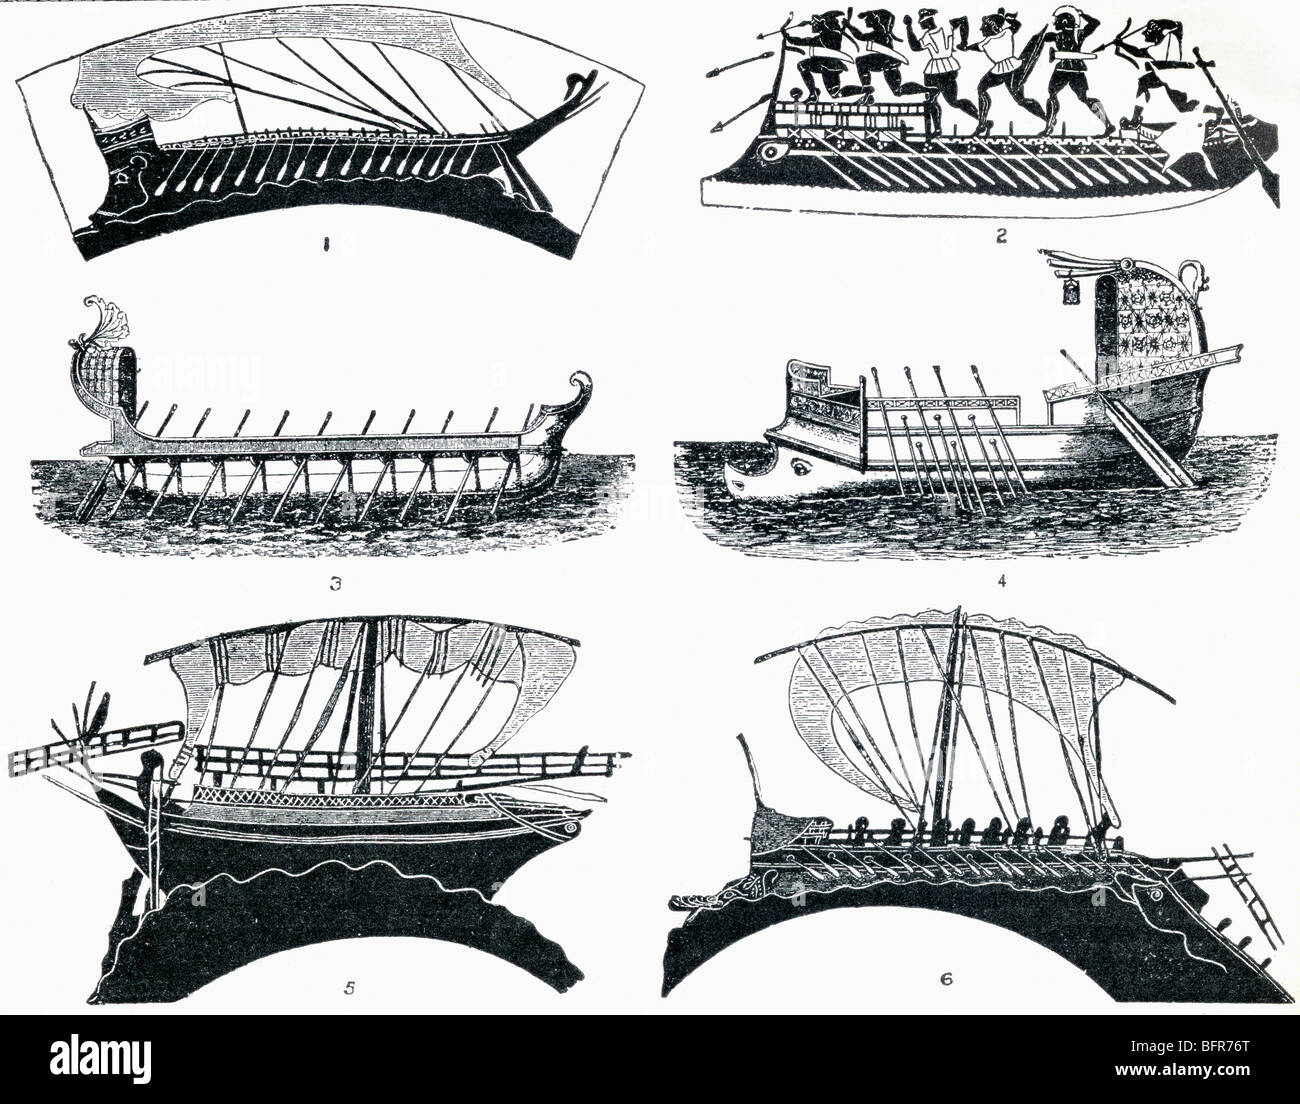 Les navires de l'antiquité grecque et romaine qui a quitté la Méditerranée. Voir la description complète ci-dessous. Banque D'Images